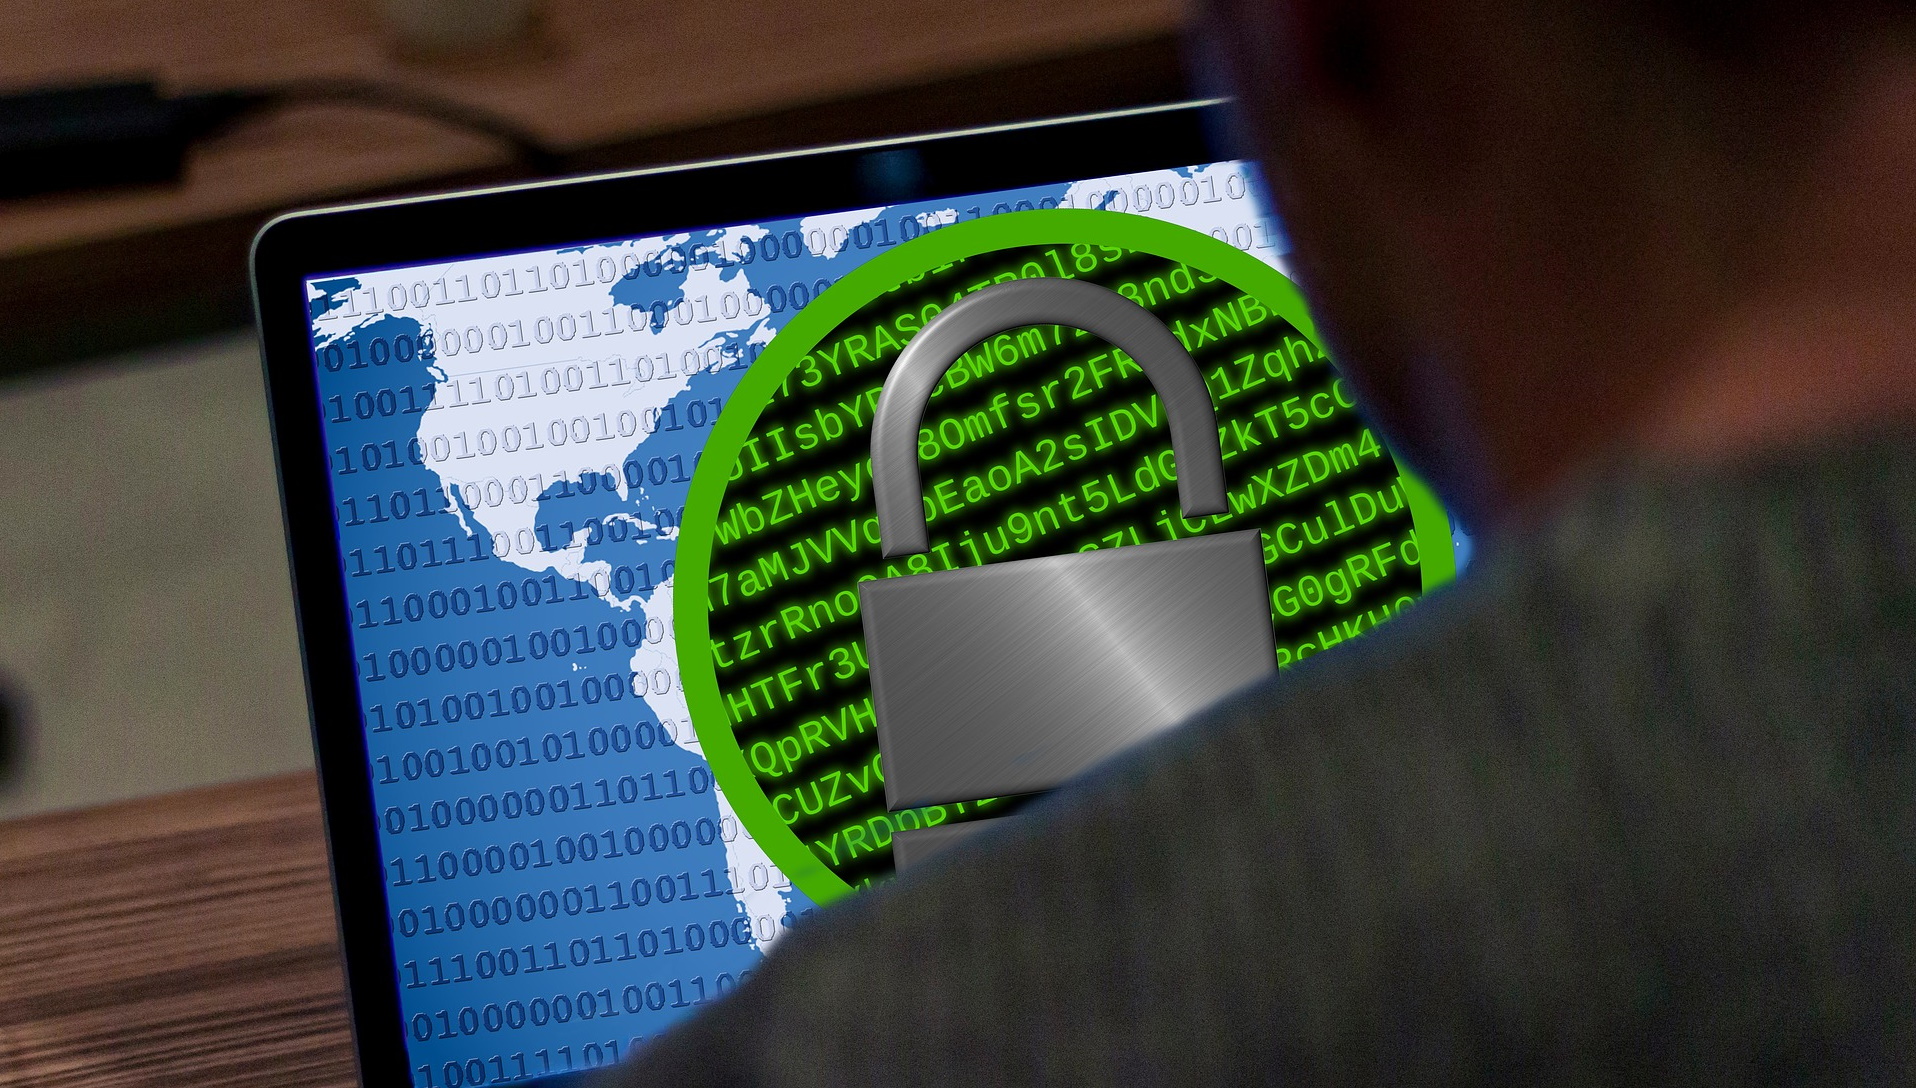 Атаки на электронную почту и программы-вымогатели доминировали в сфере киберпреступности в прошлом году